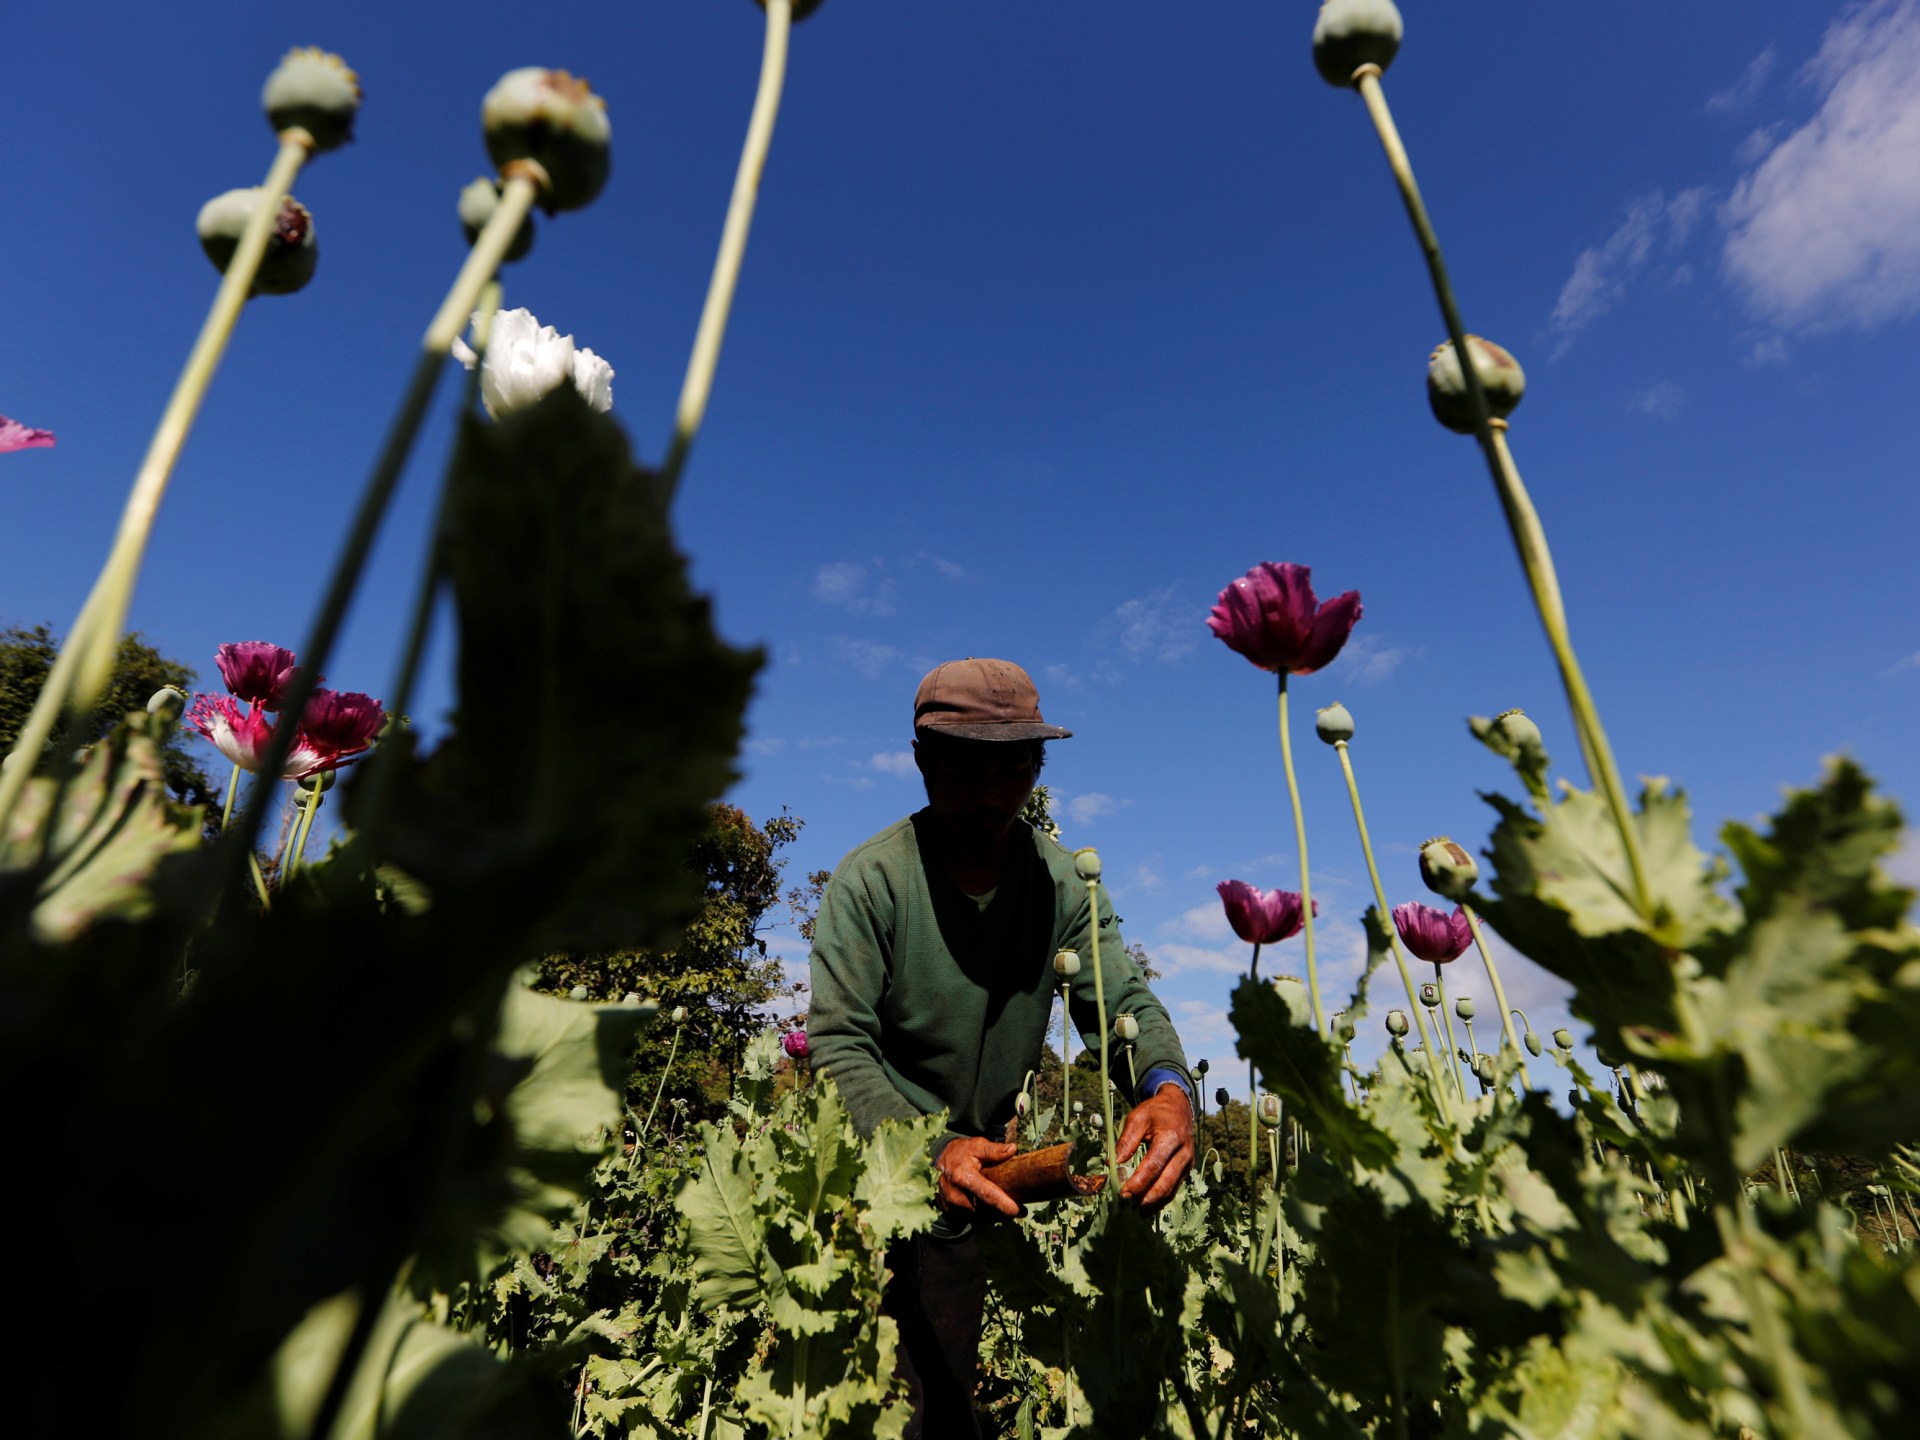 Myanmar overtakes Afghanistan as world’s top opium producer: UN | Drugs News #Myanmar #overtakes #Afghanistan #worlds #top #opium #producer #Drugs #News